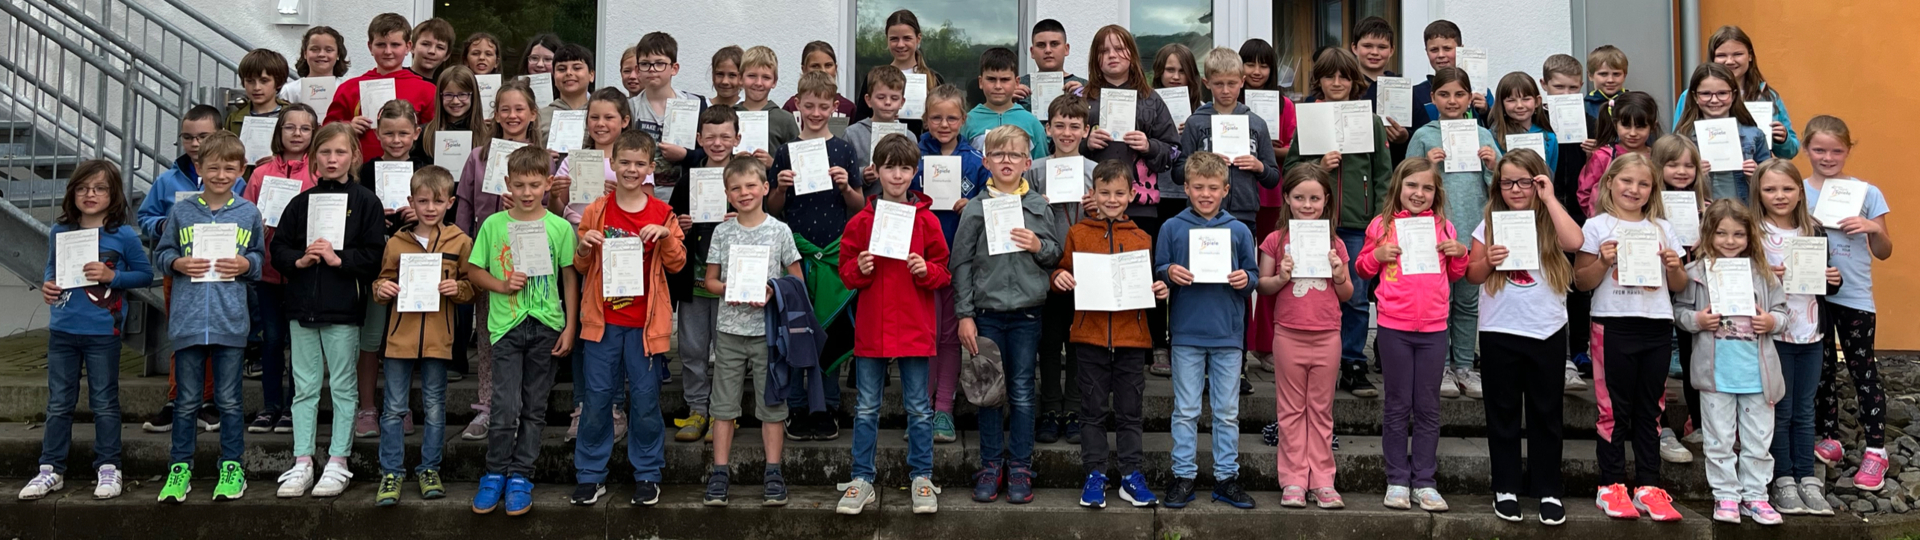 Stolze Leistungen, stolze Kinder: Die Kinder der Grundschule Guckheim freuen sich über ihre Urkunden.